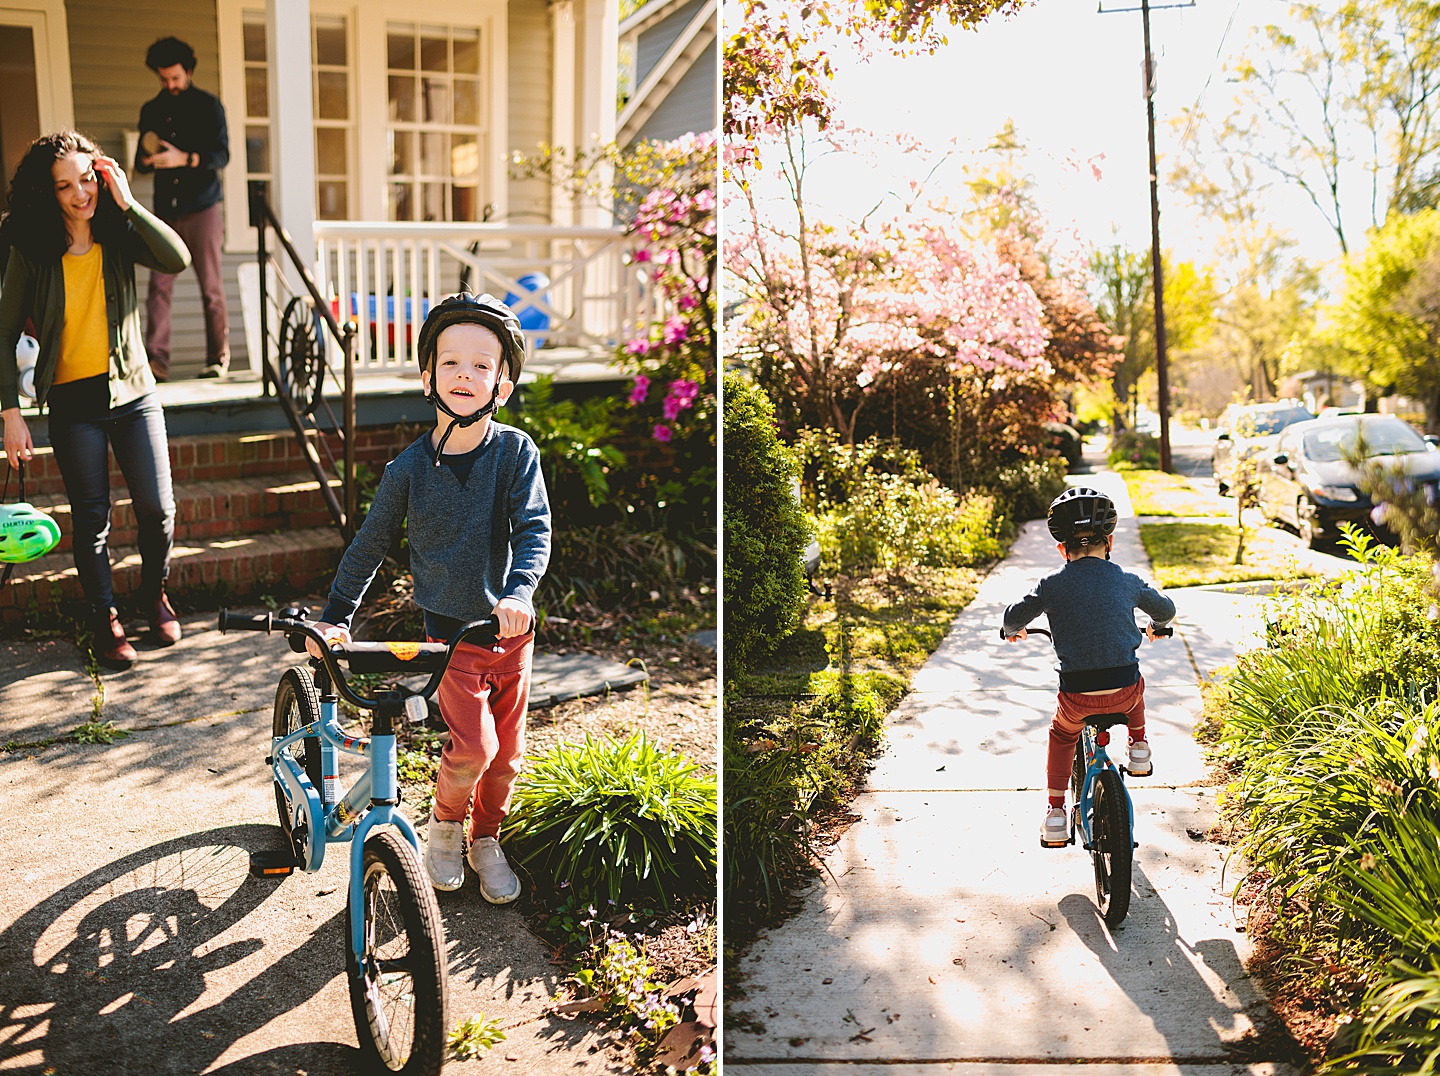 Boy riding a bike on the sidewalk